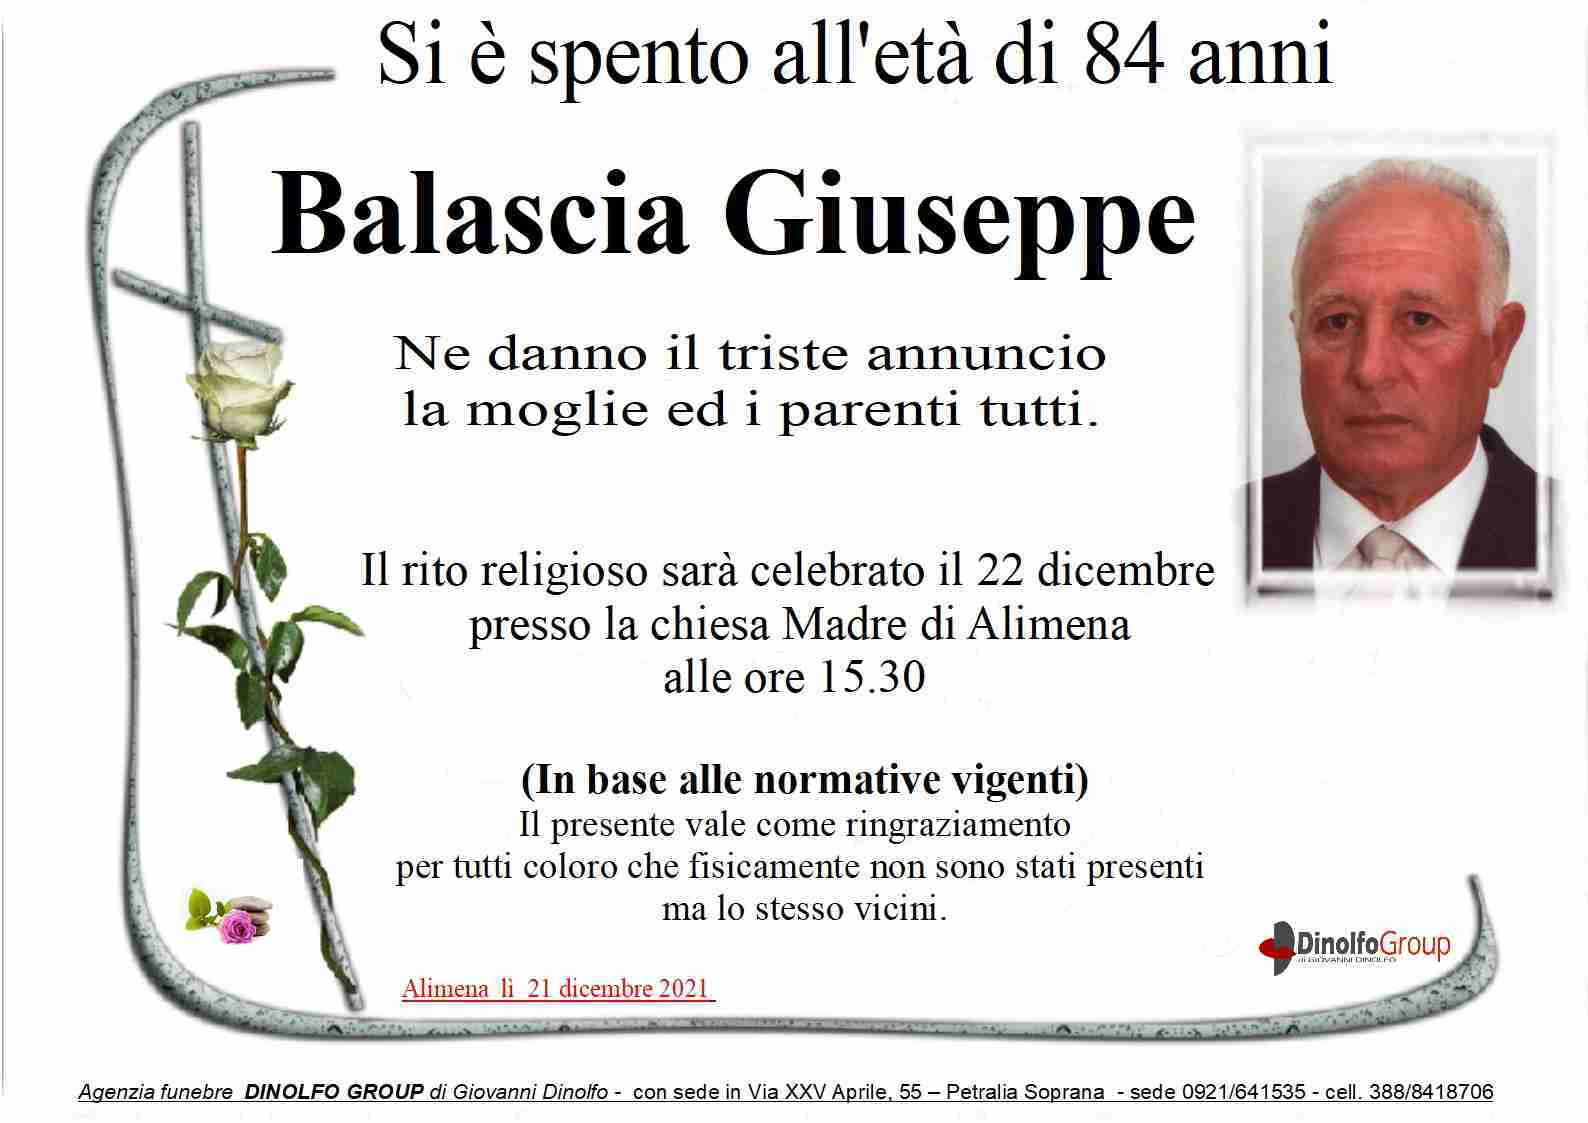 Giuseppe Balascia